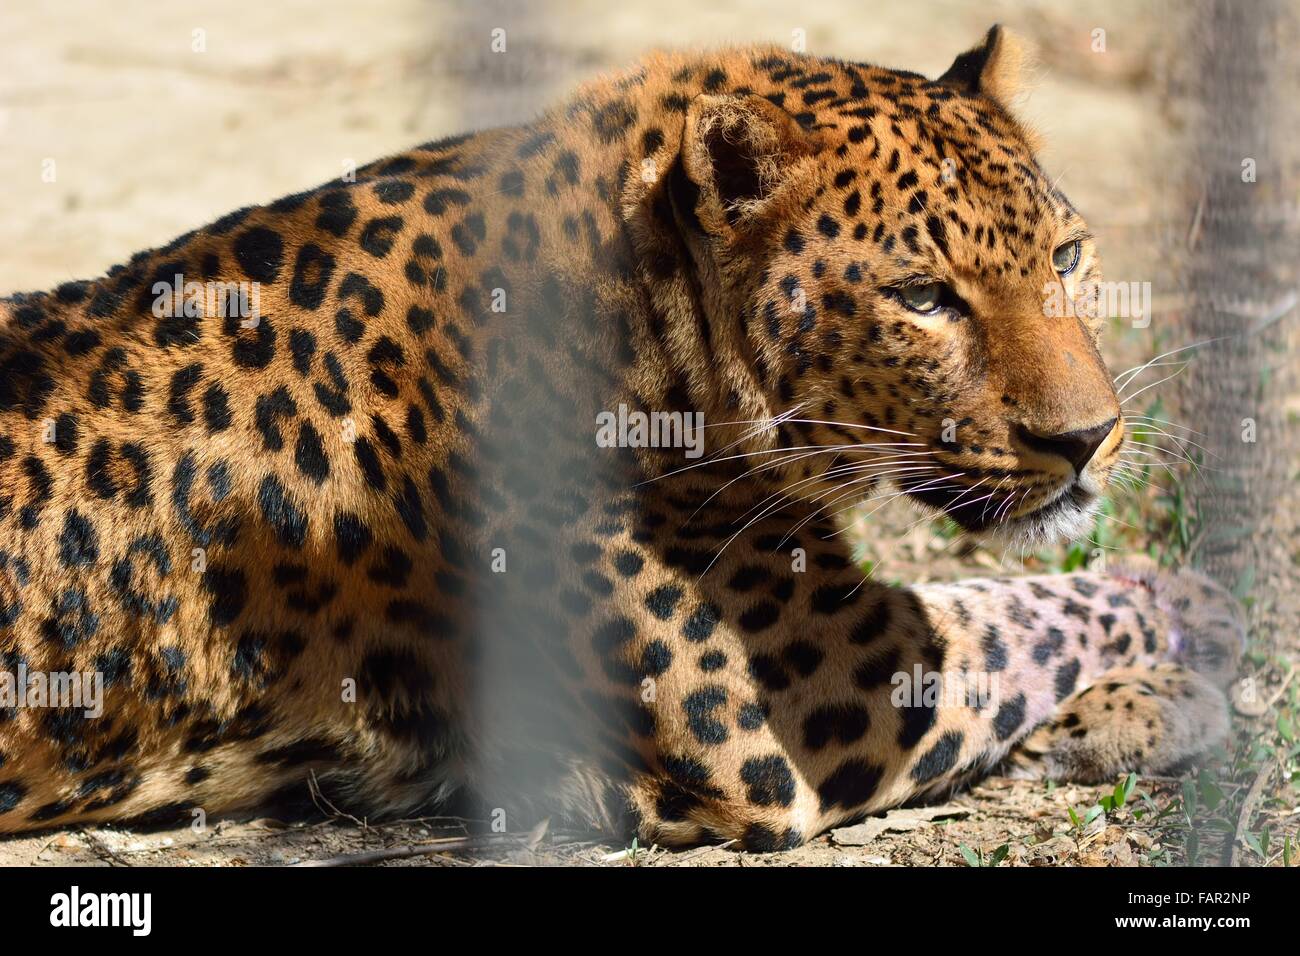 El leopardo (Panthera pardus) en cautiverio tumbado en el suelo de la jaula. Un cautivo big cat con una hermosa túnica detrás de las rejas Foto de stock